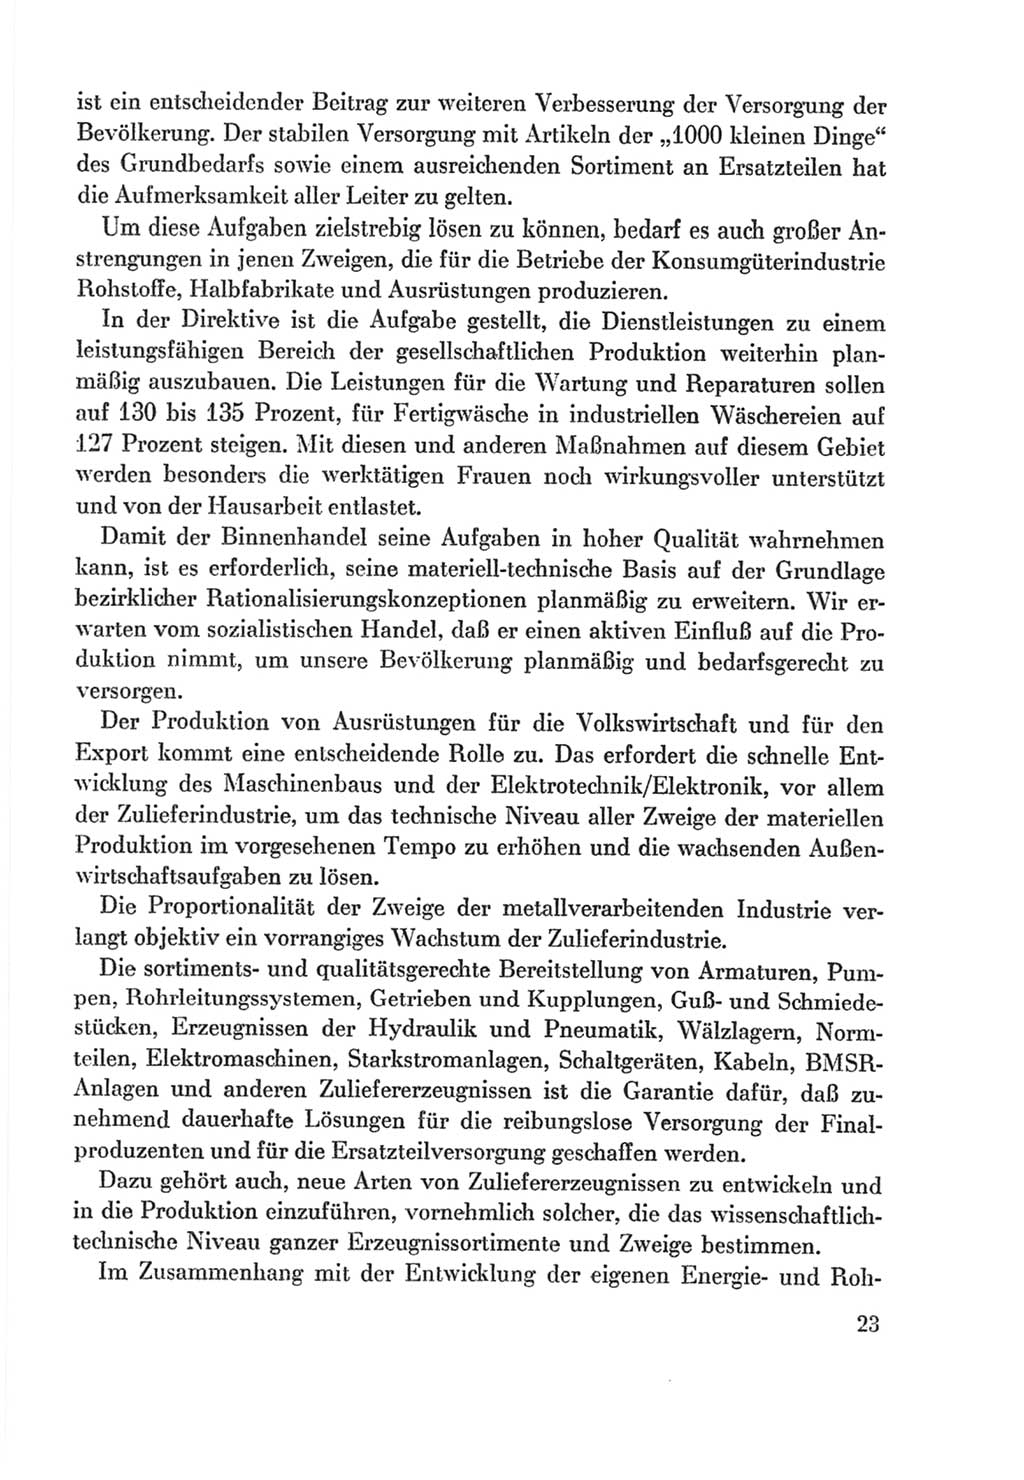 Protokoll der Verhandlungen des Ⅸ. Parteitages der Sozialistischen Einheitspartei Deutschlands (SED) [Deutsche Demokratische Republik (DDR)] 1976, Band 2, Seite 23 (Prot. Verh. Ⅸ. PT SED DDR 1976, Bd. 2, S. 23)